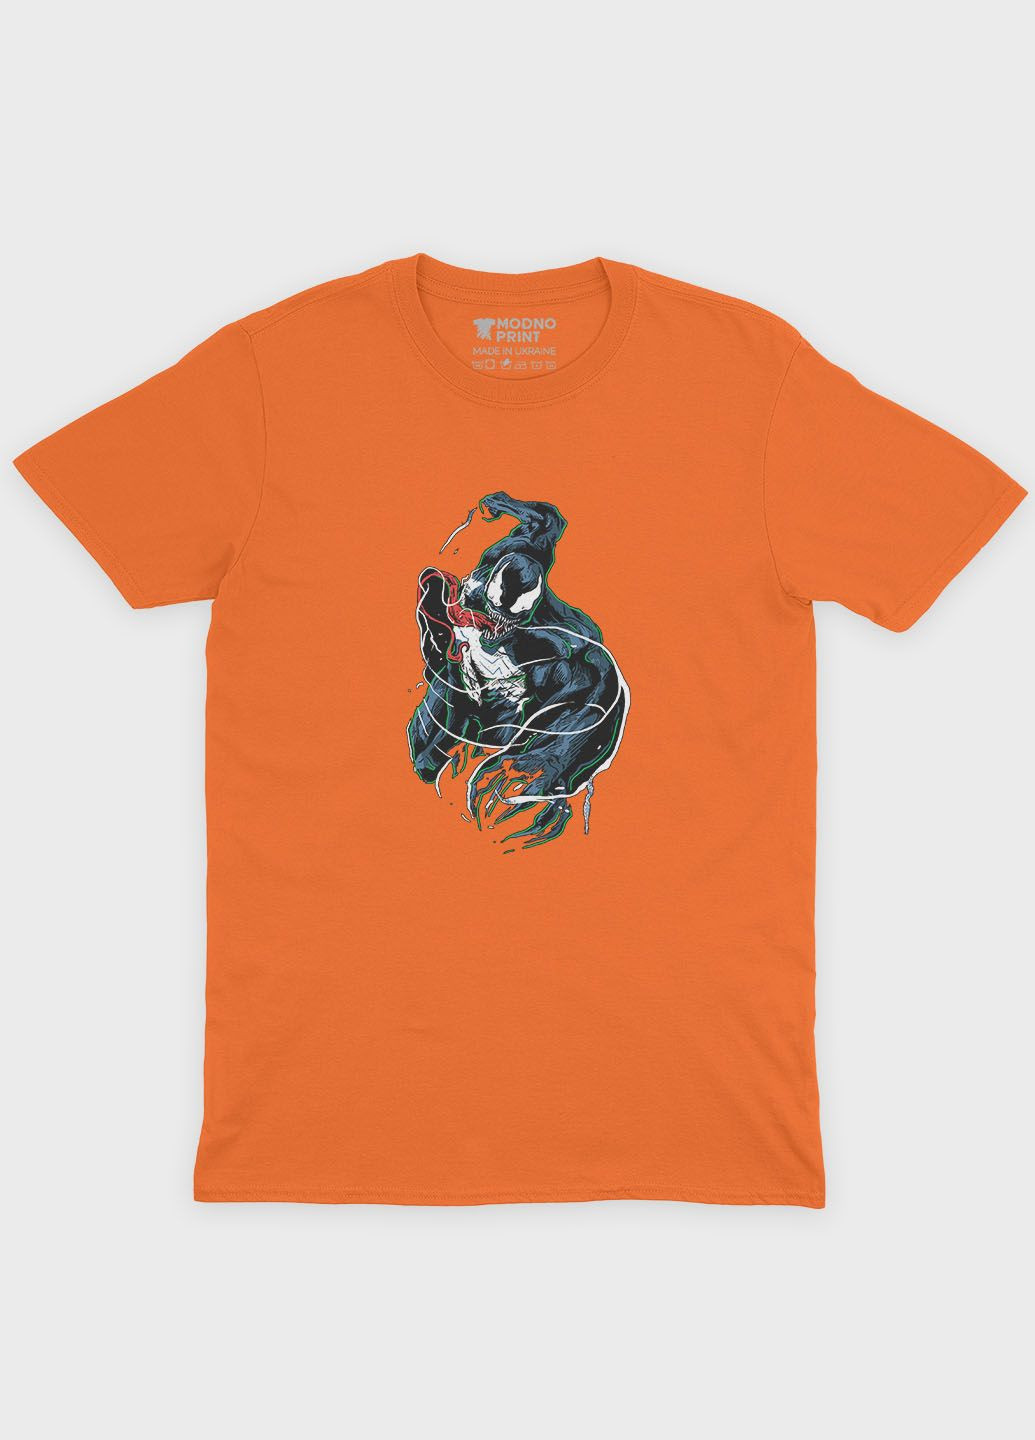 Помаранчева демісезонна футболка для хлопчика з принтом суперзлодія - веном (ts001-1-ora-006-013-005-b) Modno